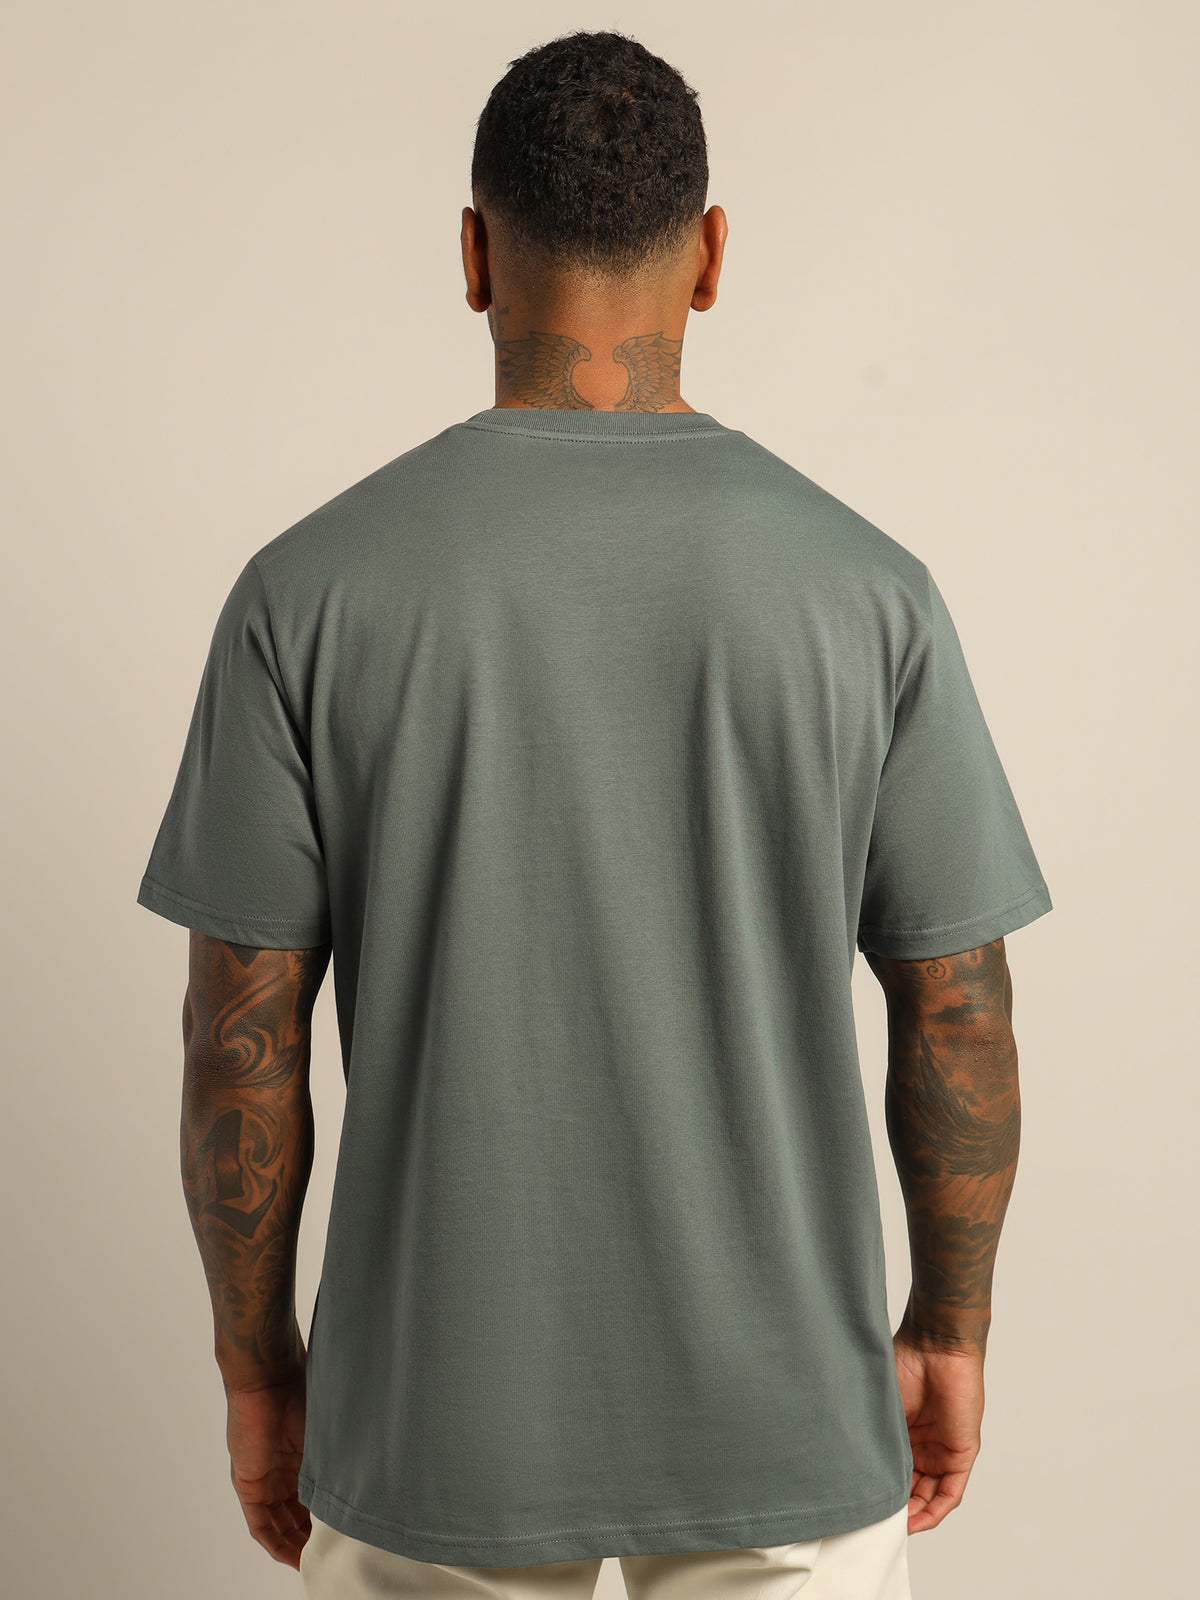 Pocket Short Sleeve T-Shirt in Light Green